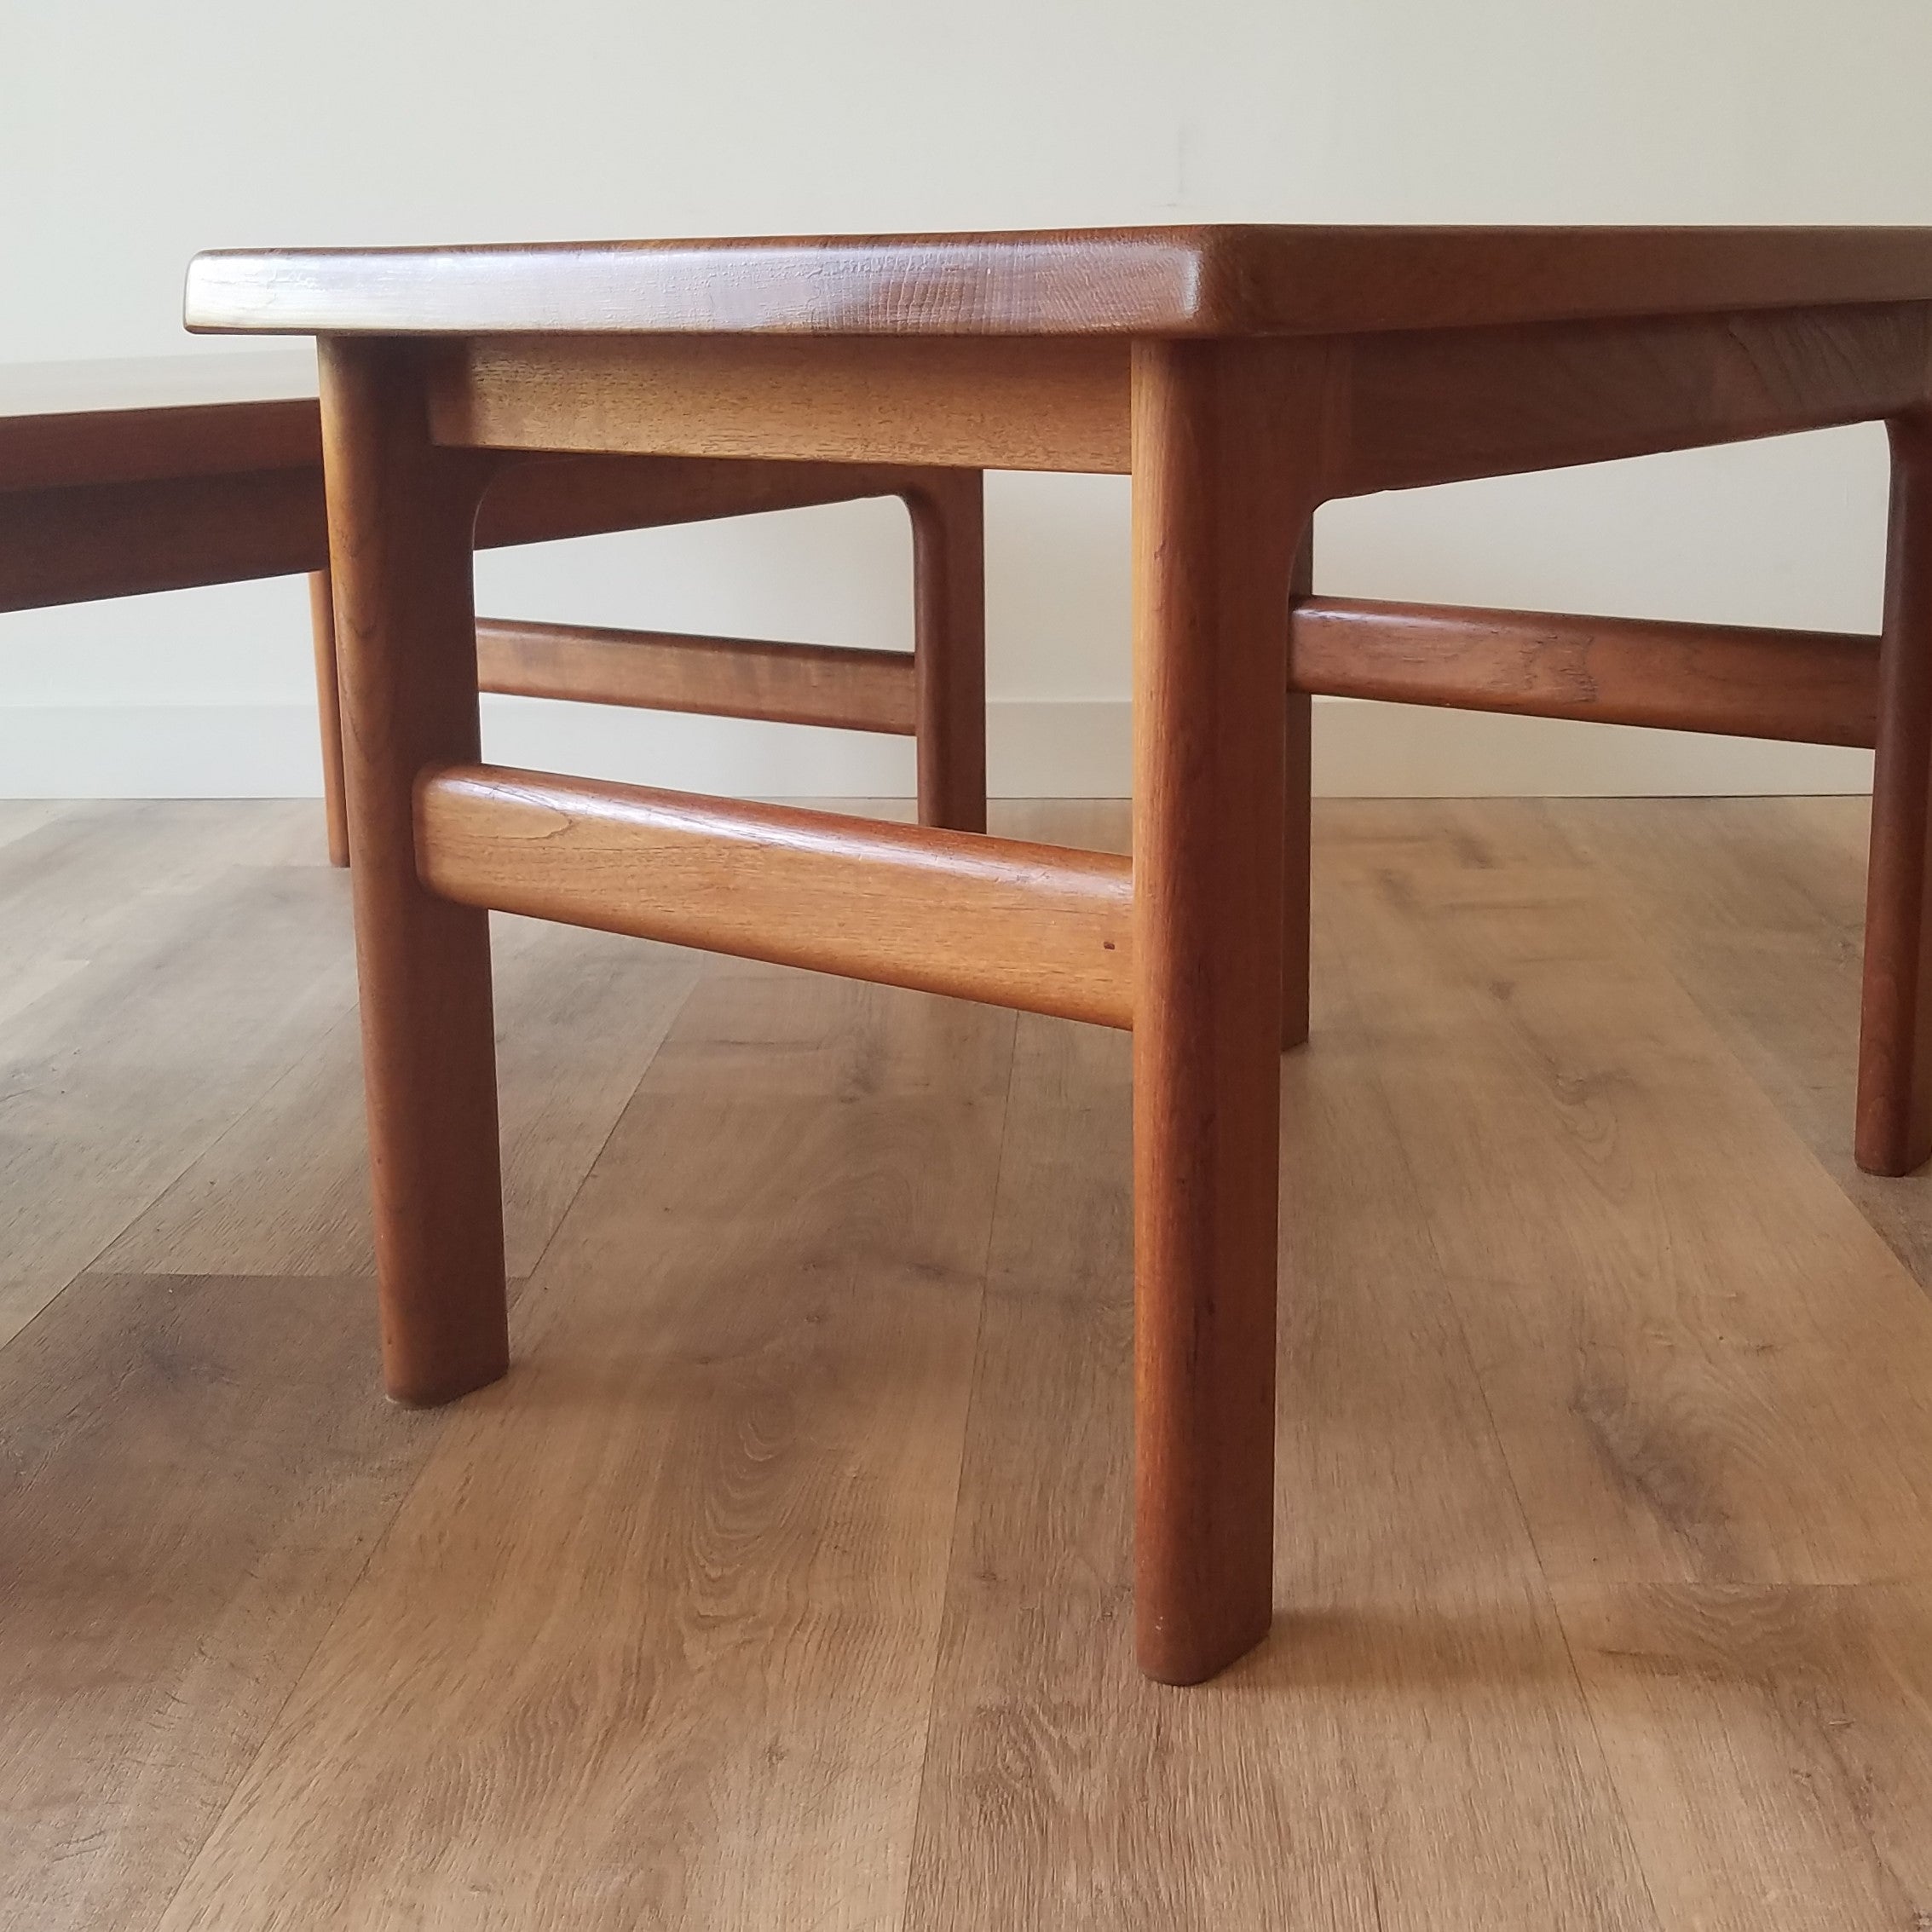 Neils Bach Coffee + Side Table - a set